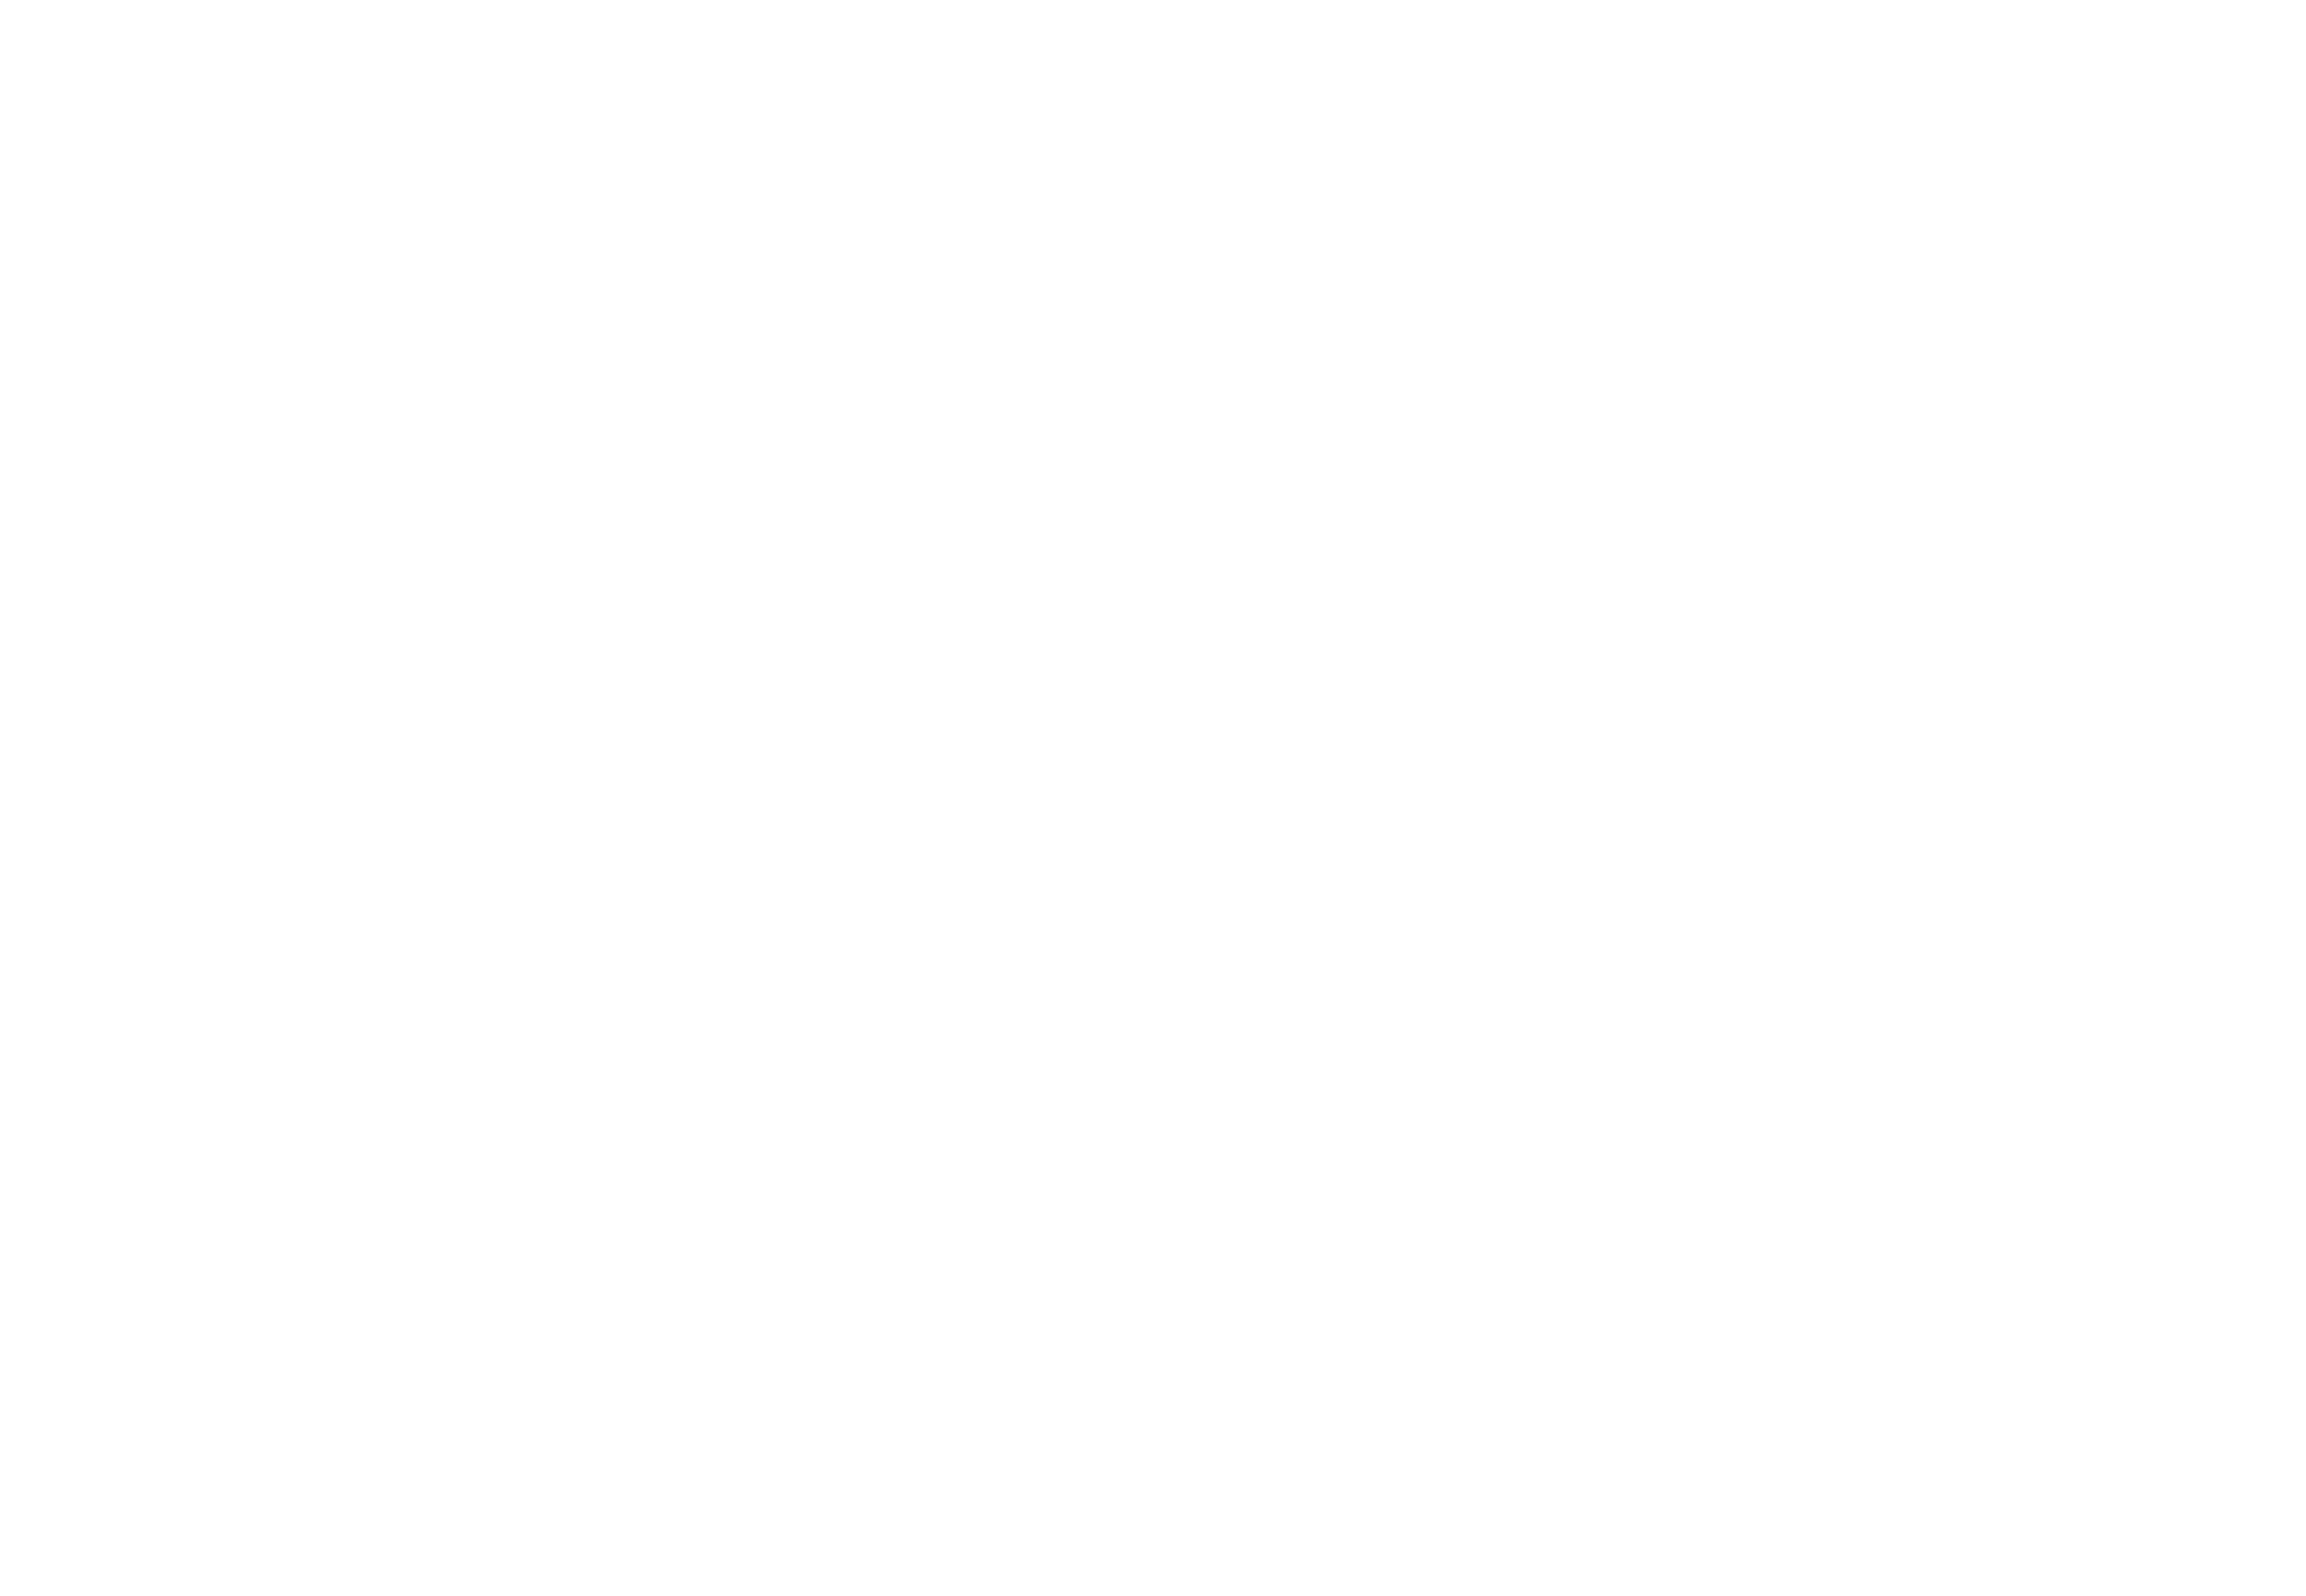 White QA logo